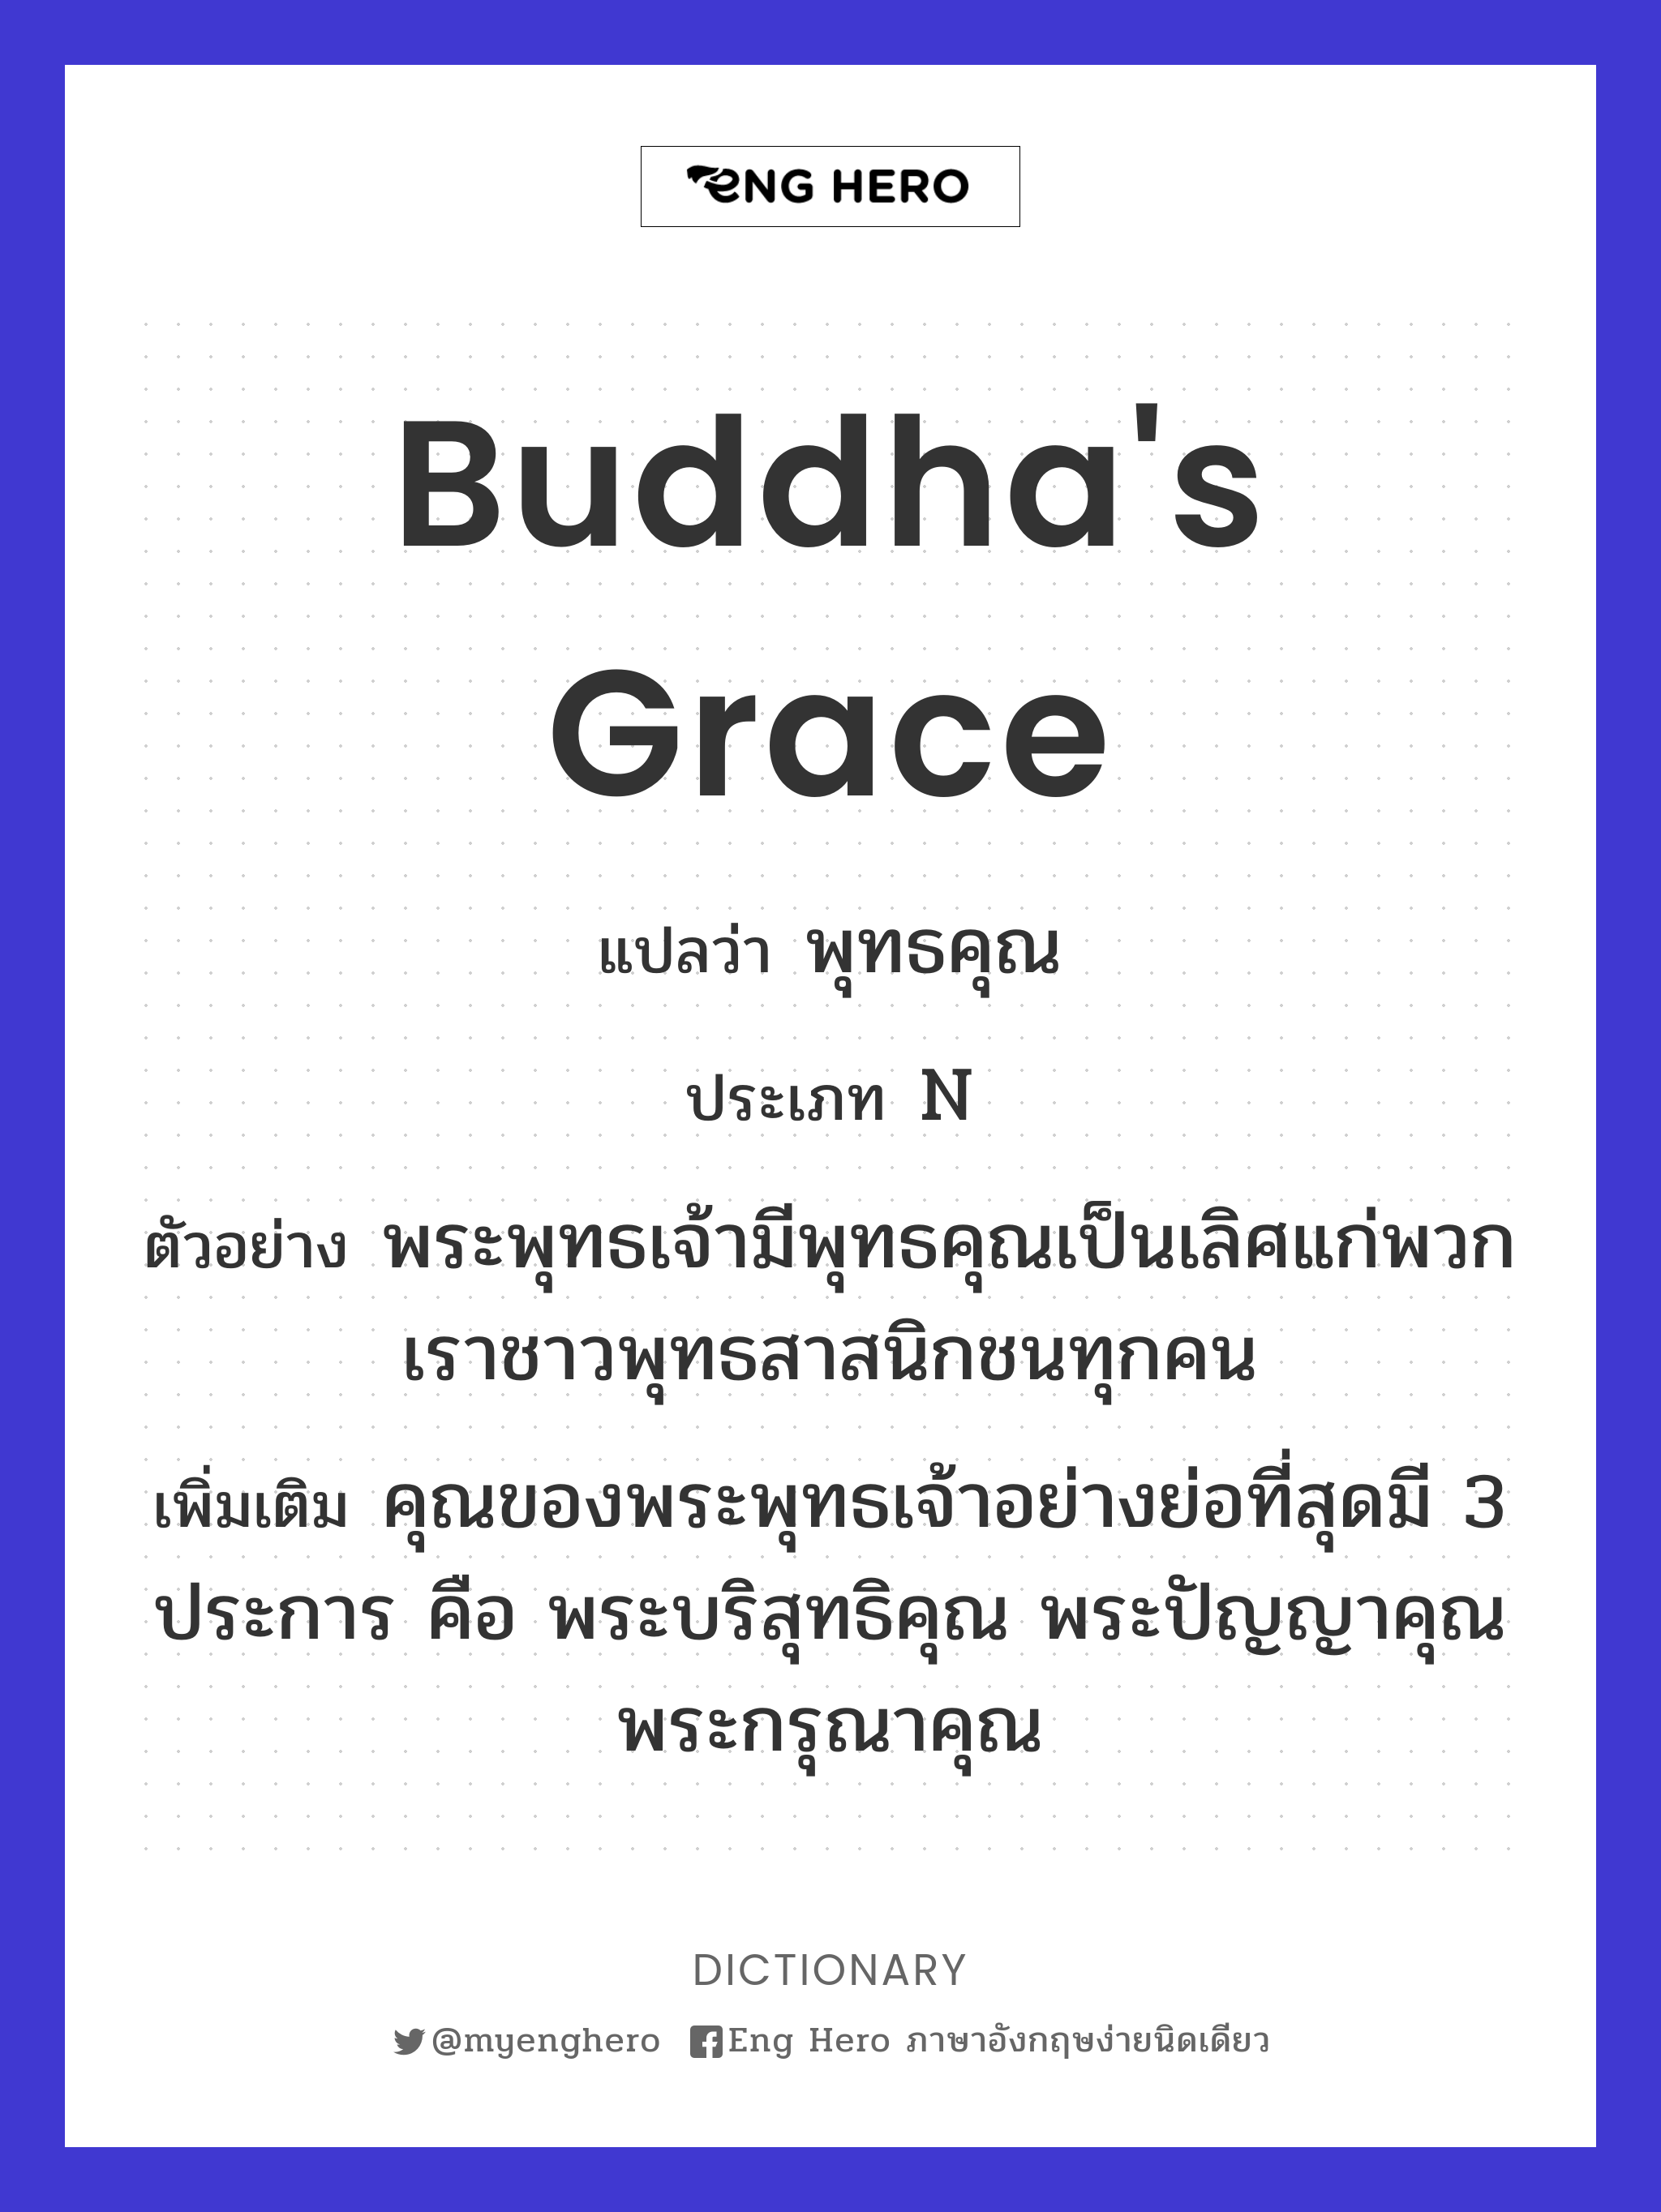 Buddha's grace